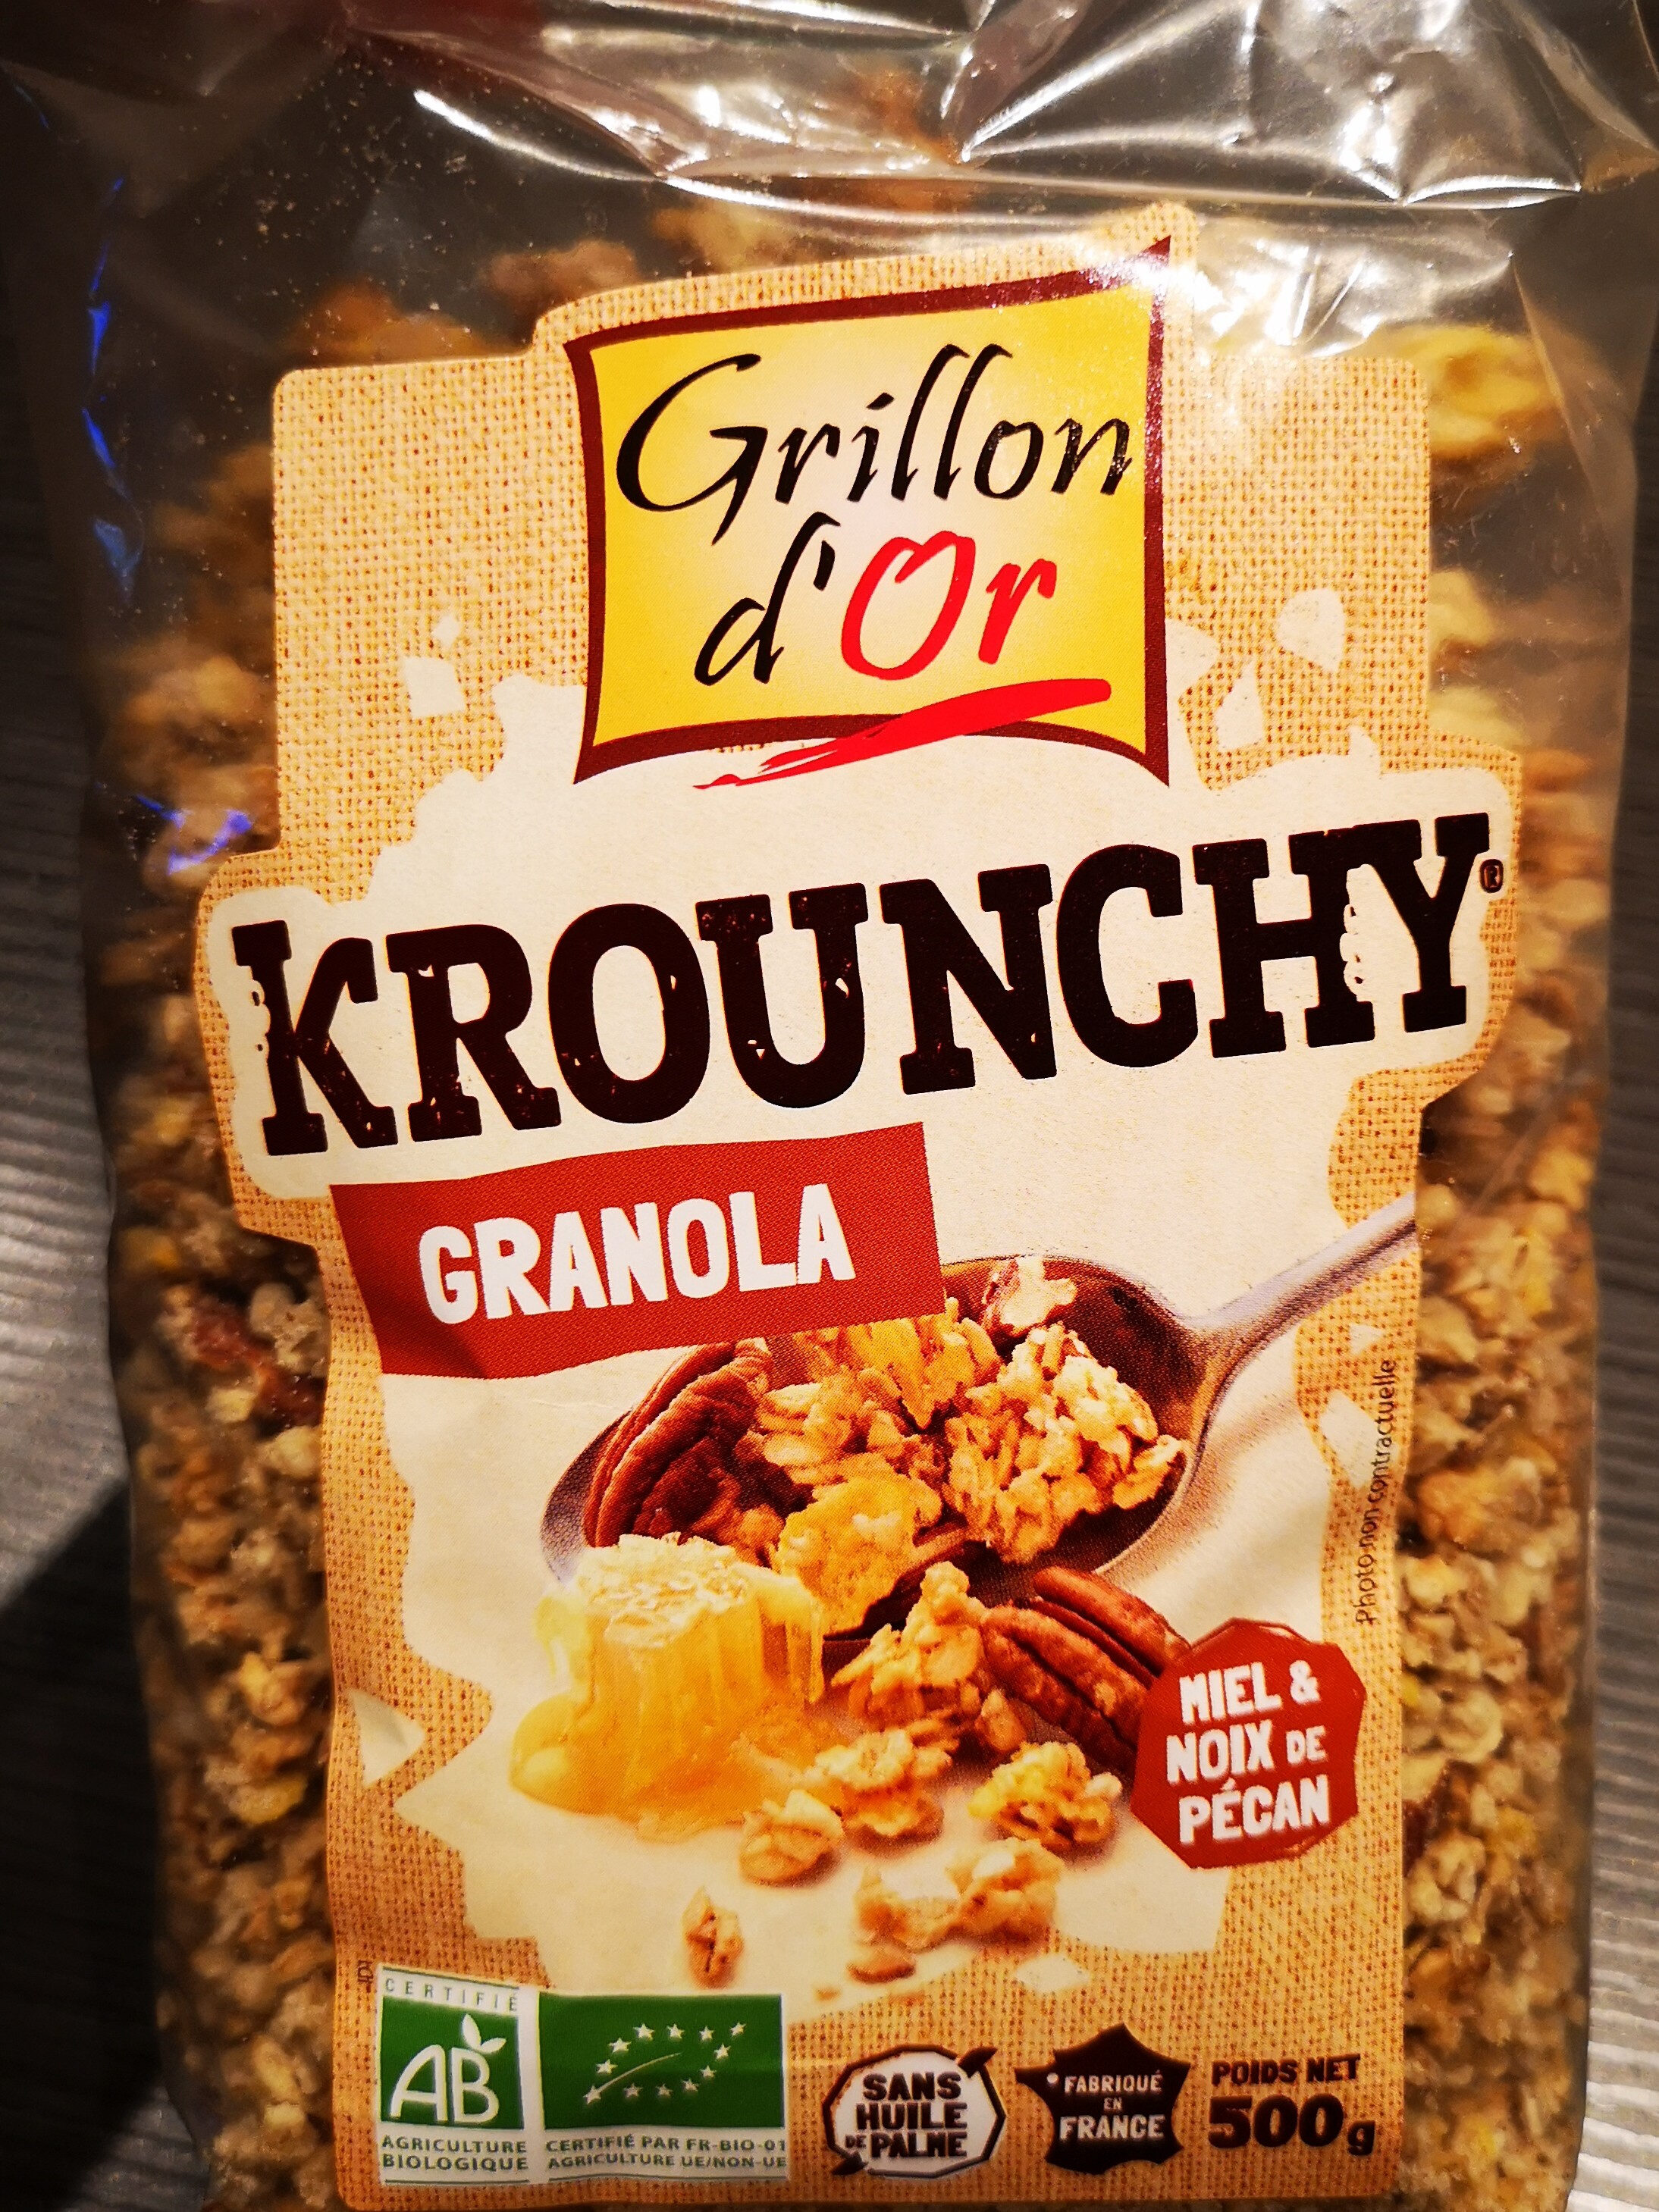 Krounchy granola miel & noix de pécan - Product - fr